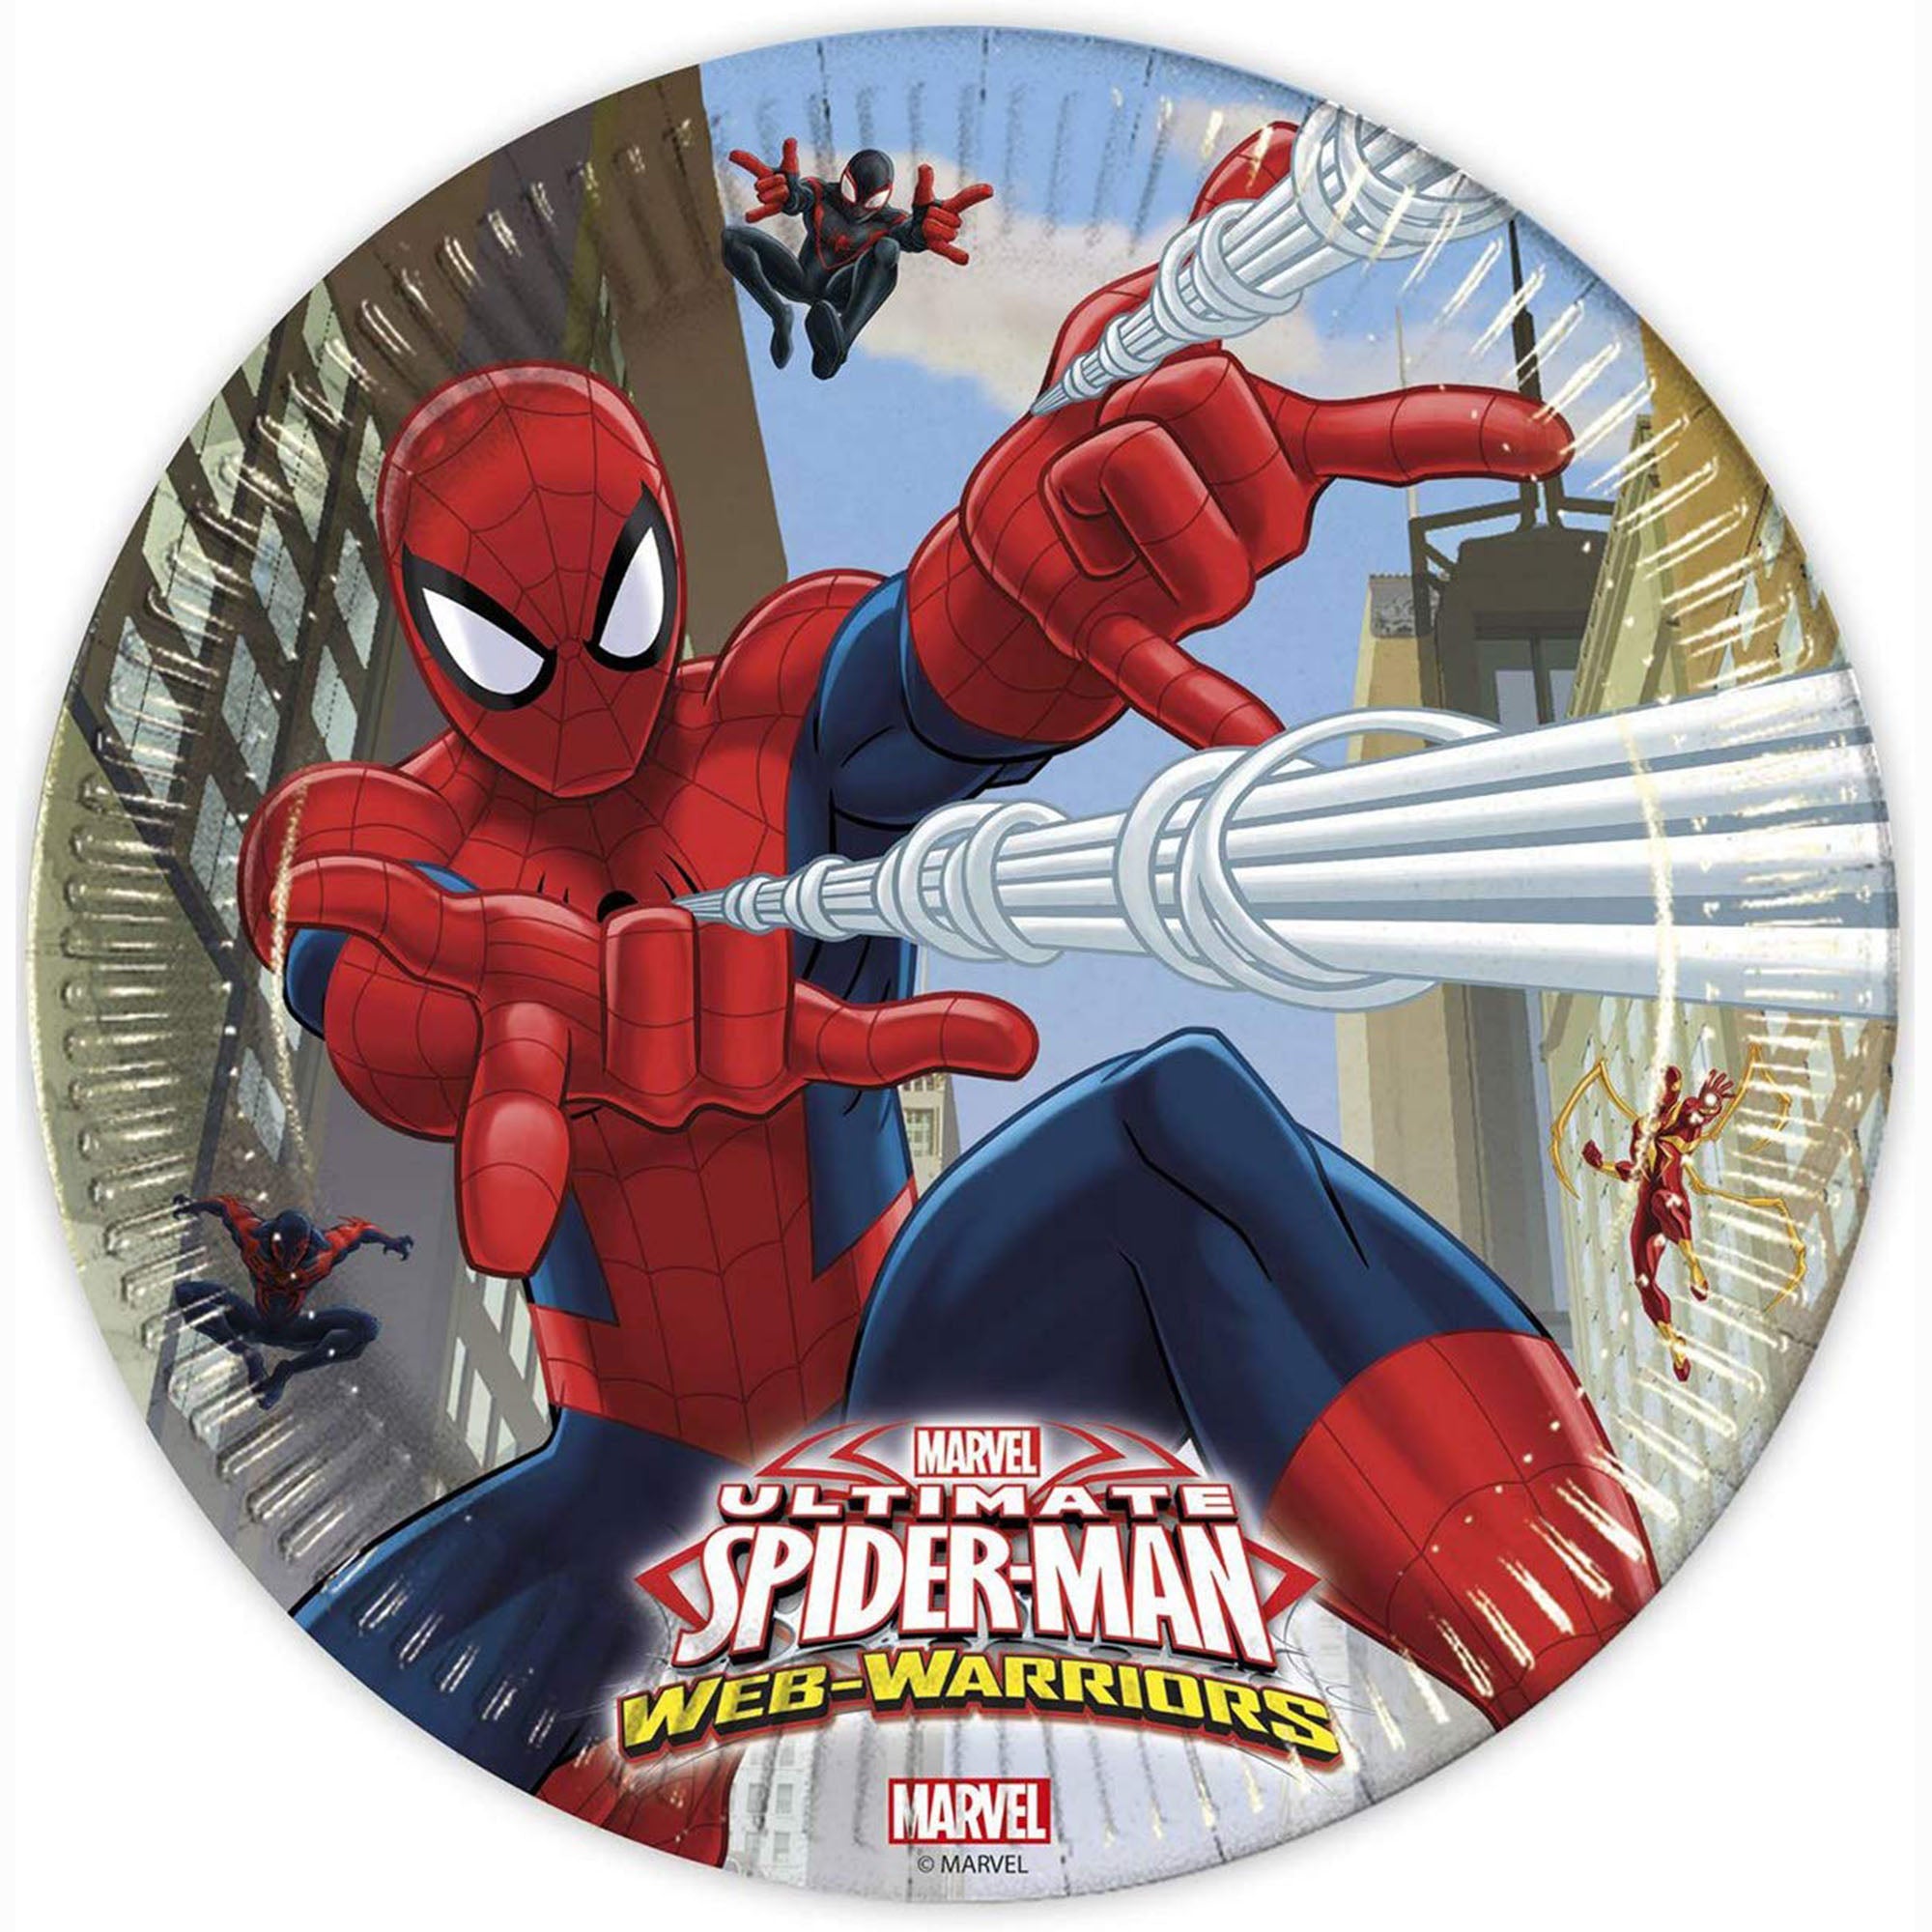 Kit party Marvel Spiderman 24 persone bicchieri piatti tovaglia tovagl